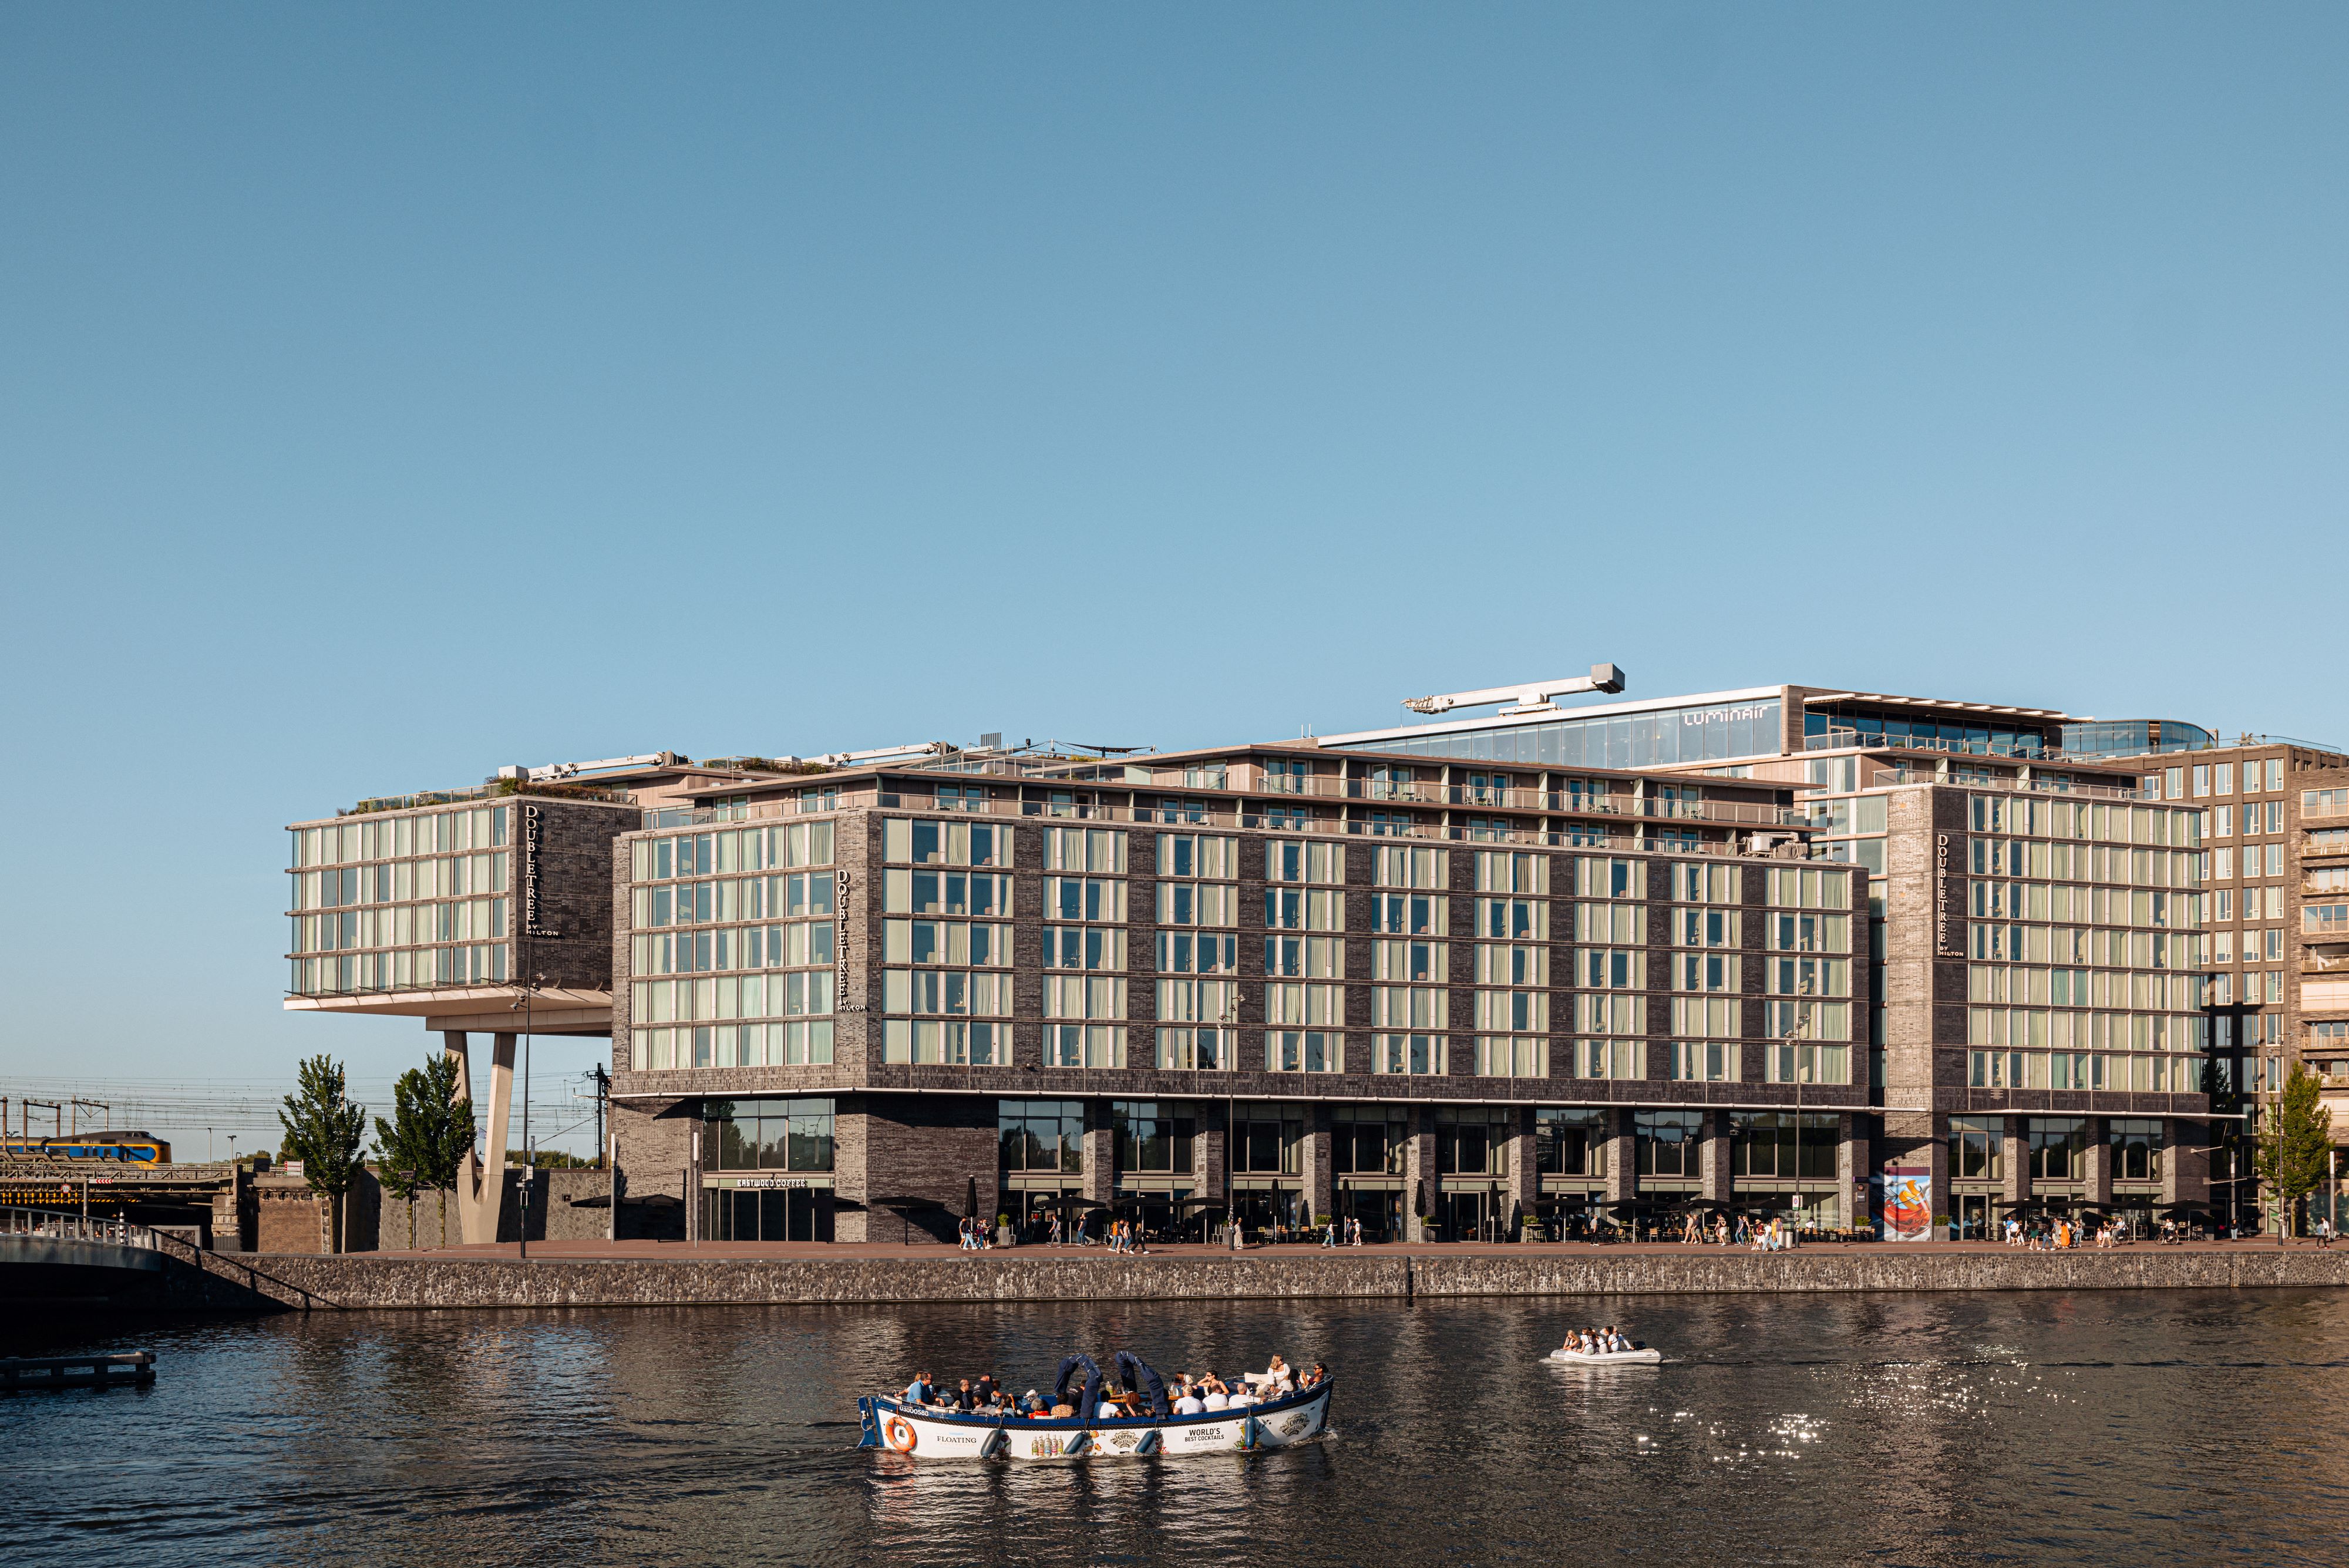 Amsterdams hotel maakt lokaal impact met aanbieden hotelkamers aan economische daklozen